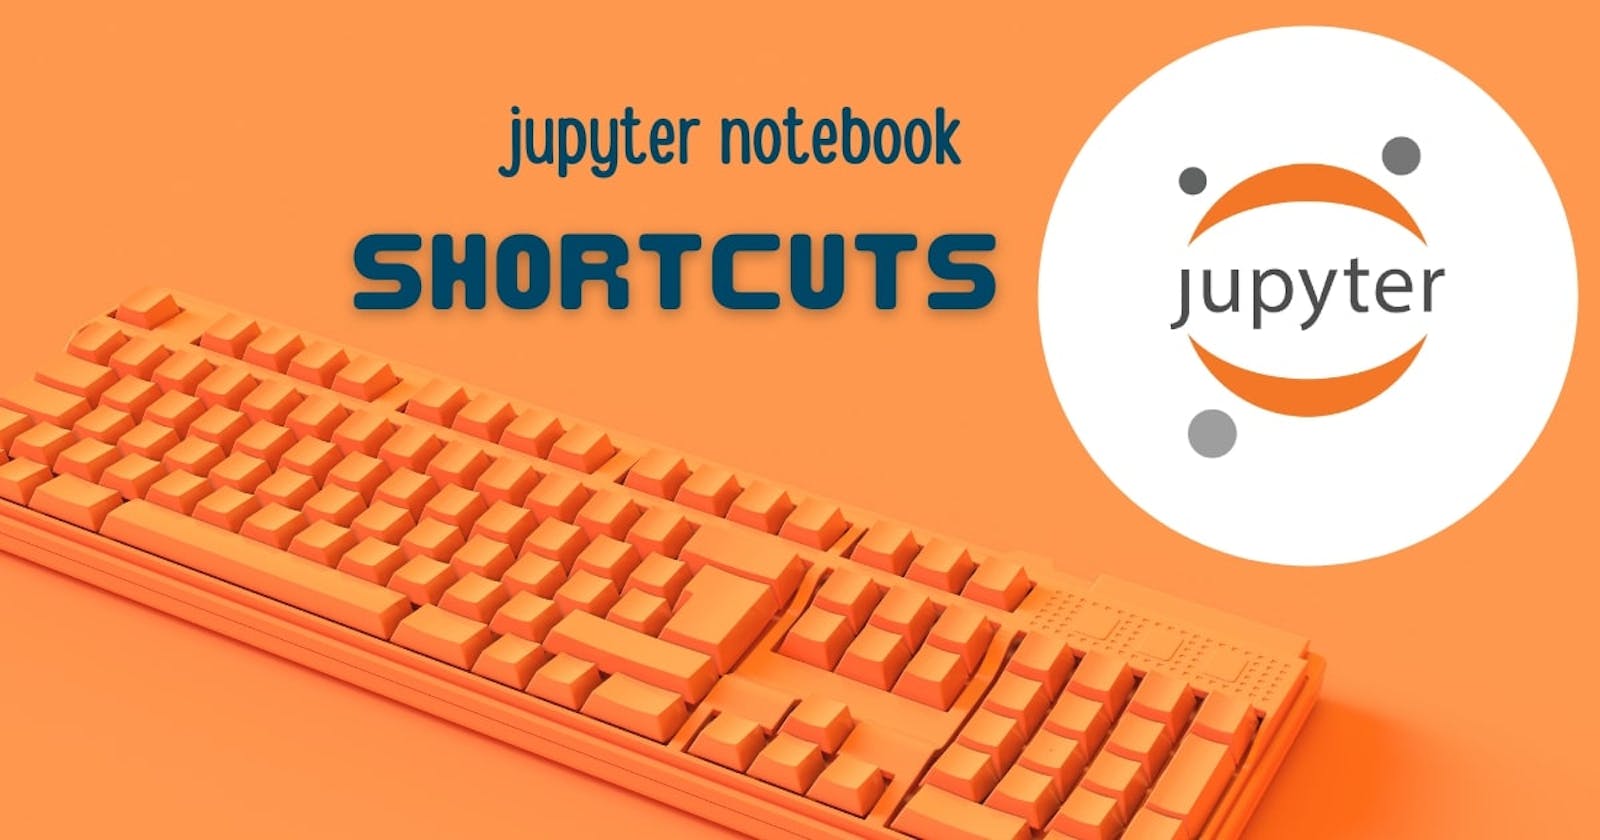 Jupyter Notebook shortcuts